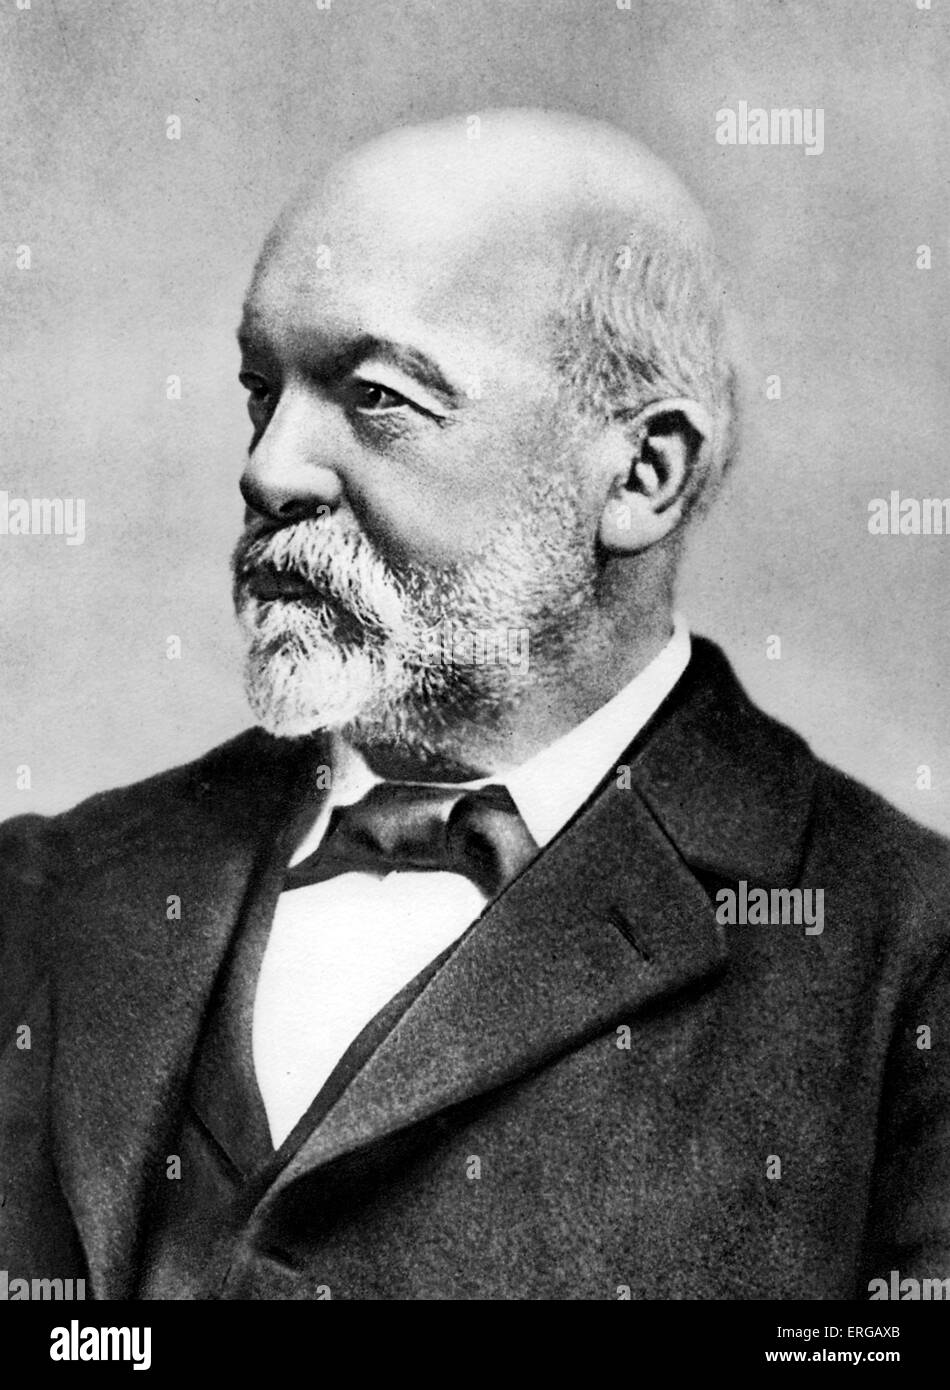 Gottlieb Daimler (17 mars 1834 - 6 mars 1900) -pionnier allemand des moteurs à combustion interne et le développement de l'automobile ; Banque D'Images